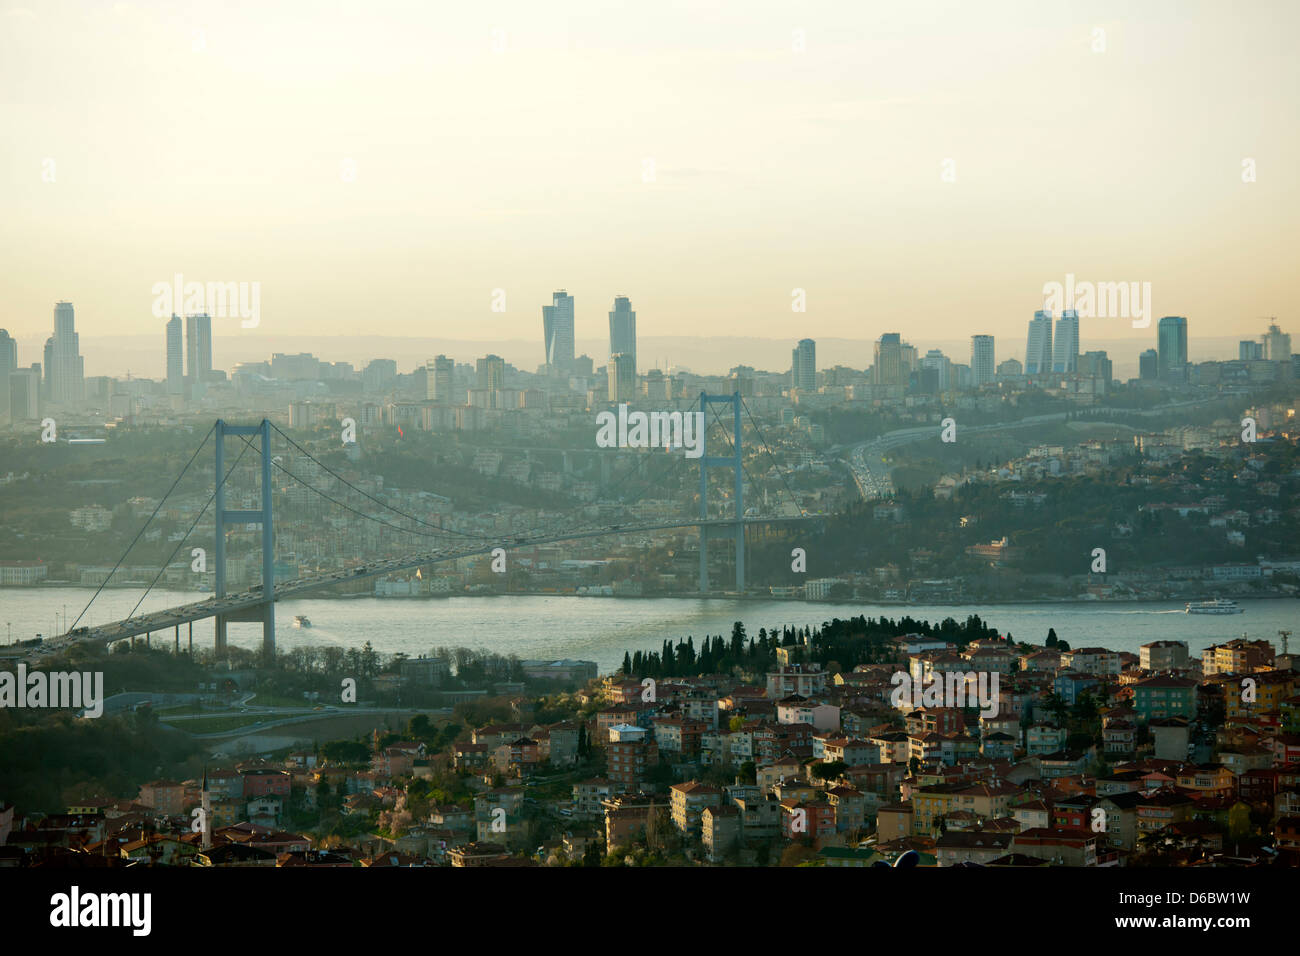 Türkei, Istanbul, Büyük Camlica, Parkanlage auf einem Hügel mit Blick über die 1. Bosporus-Brücke auf die Stadt. Stock Photo